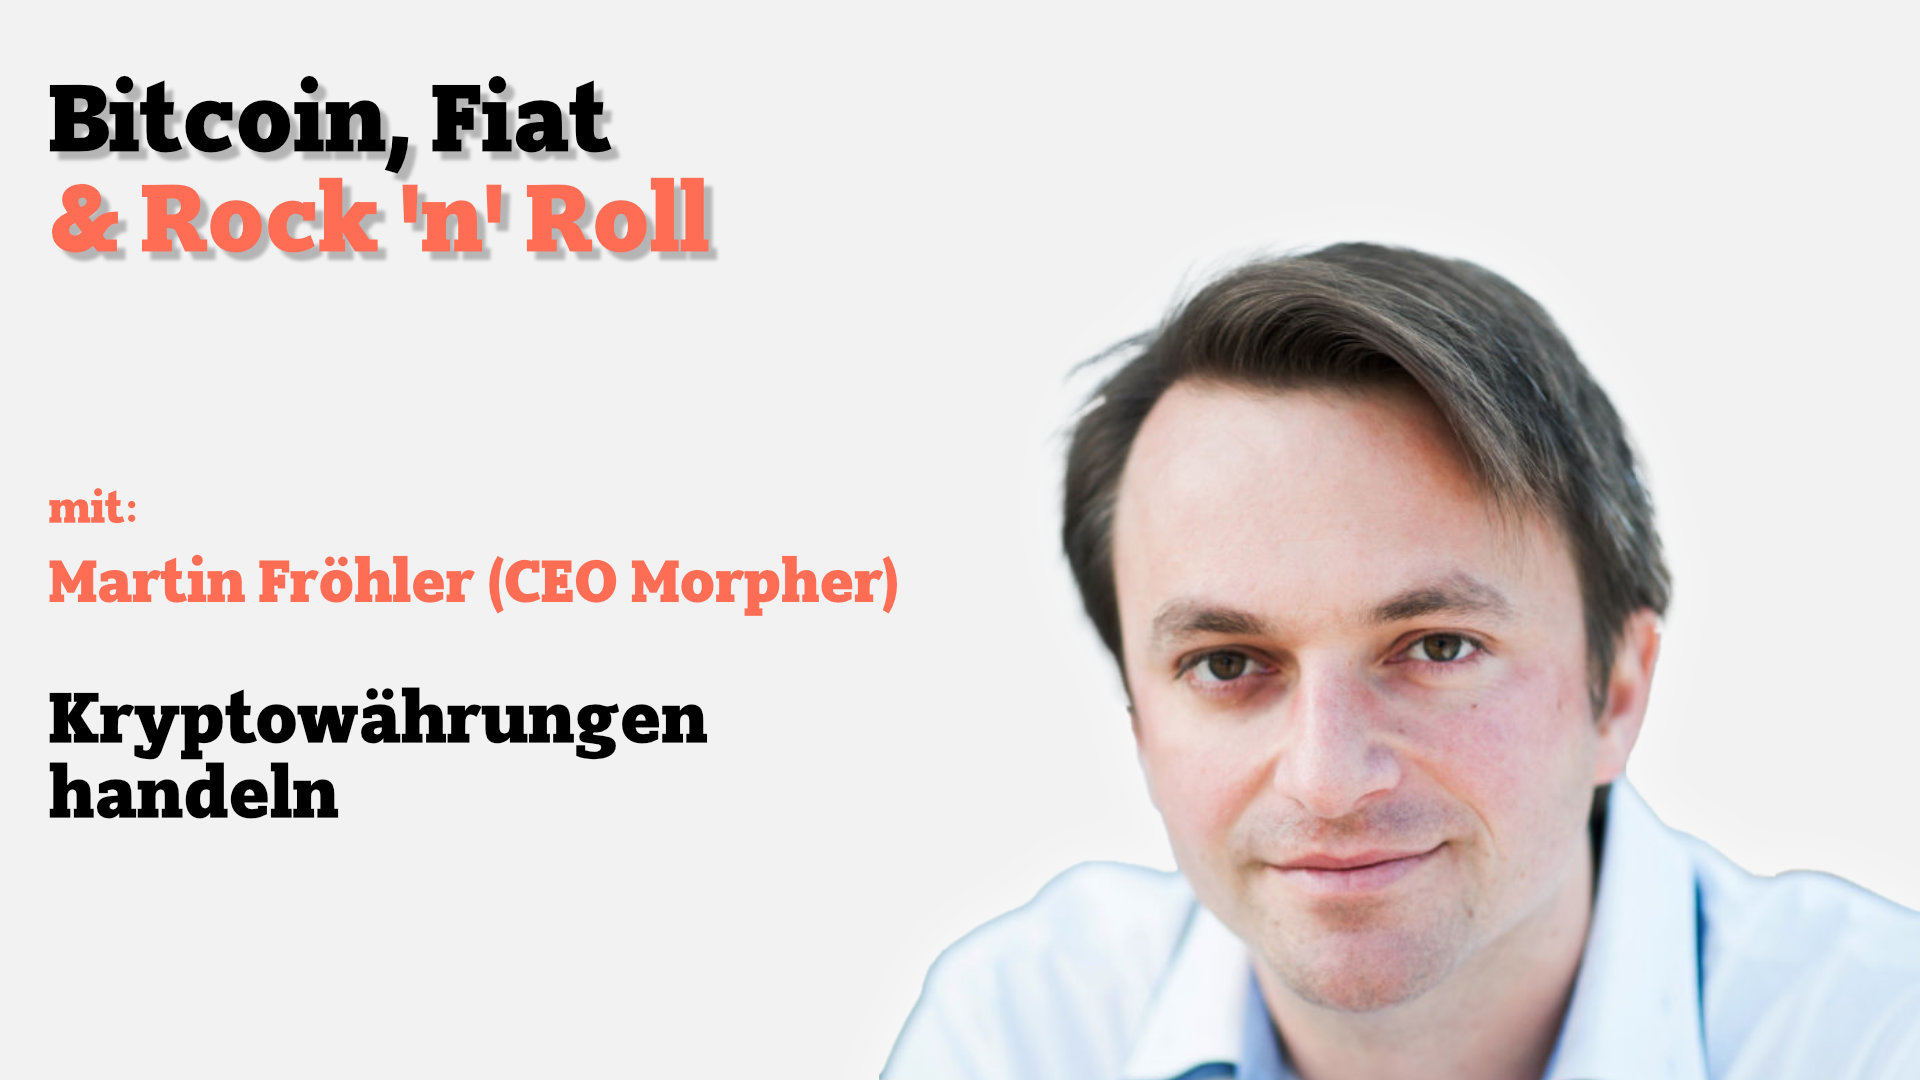 Kryptowährungen handeln mit Morpher-CEO Martin Fröhler